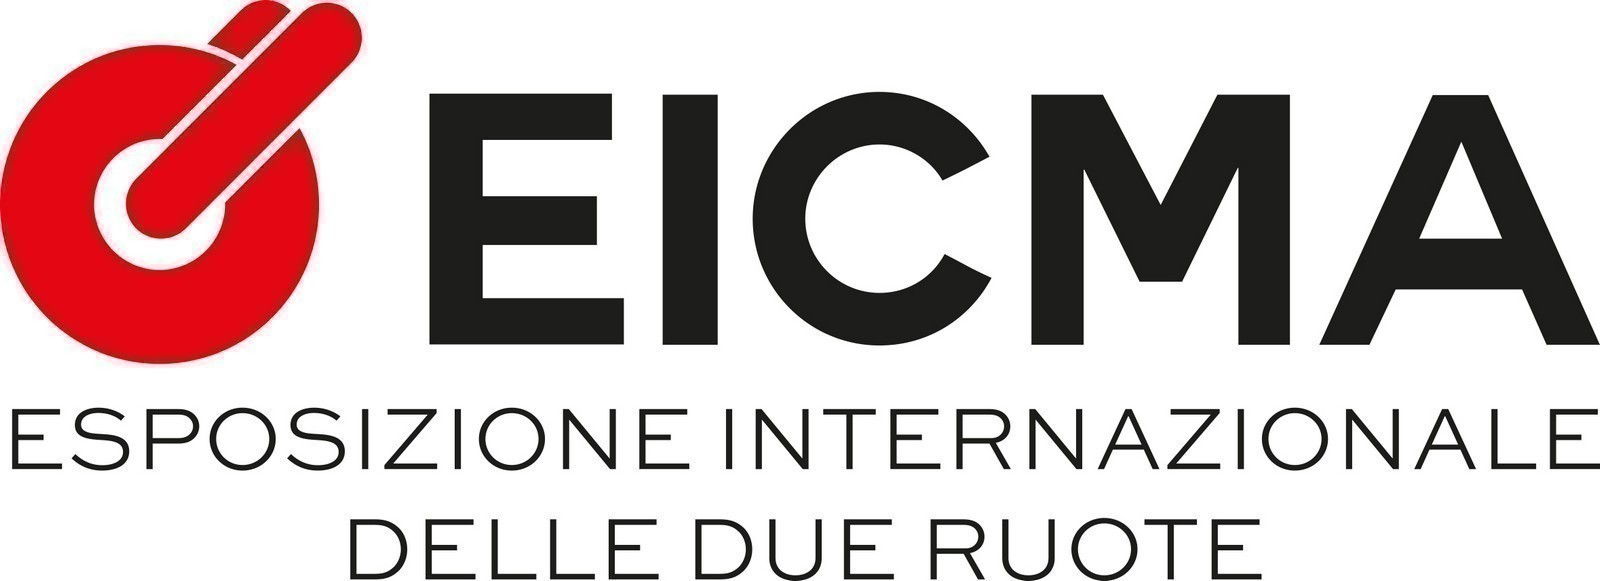 EICMA logo oriz pos